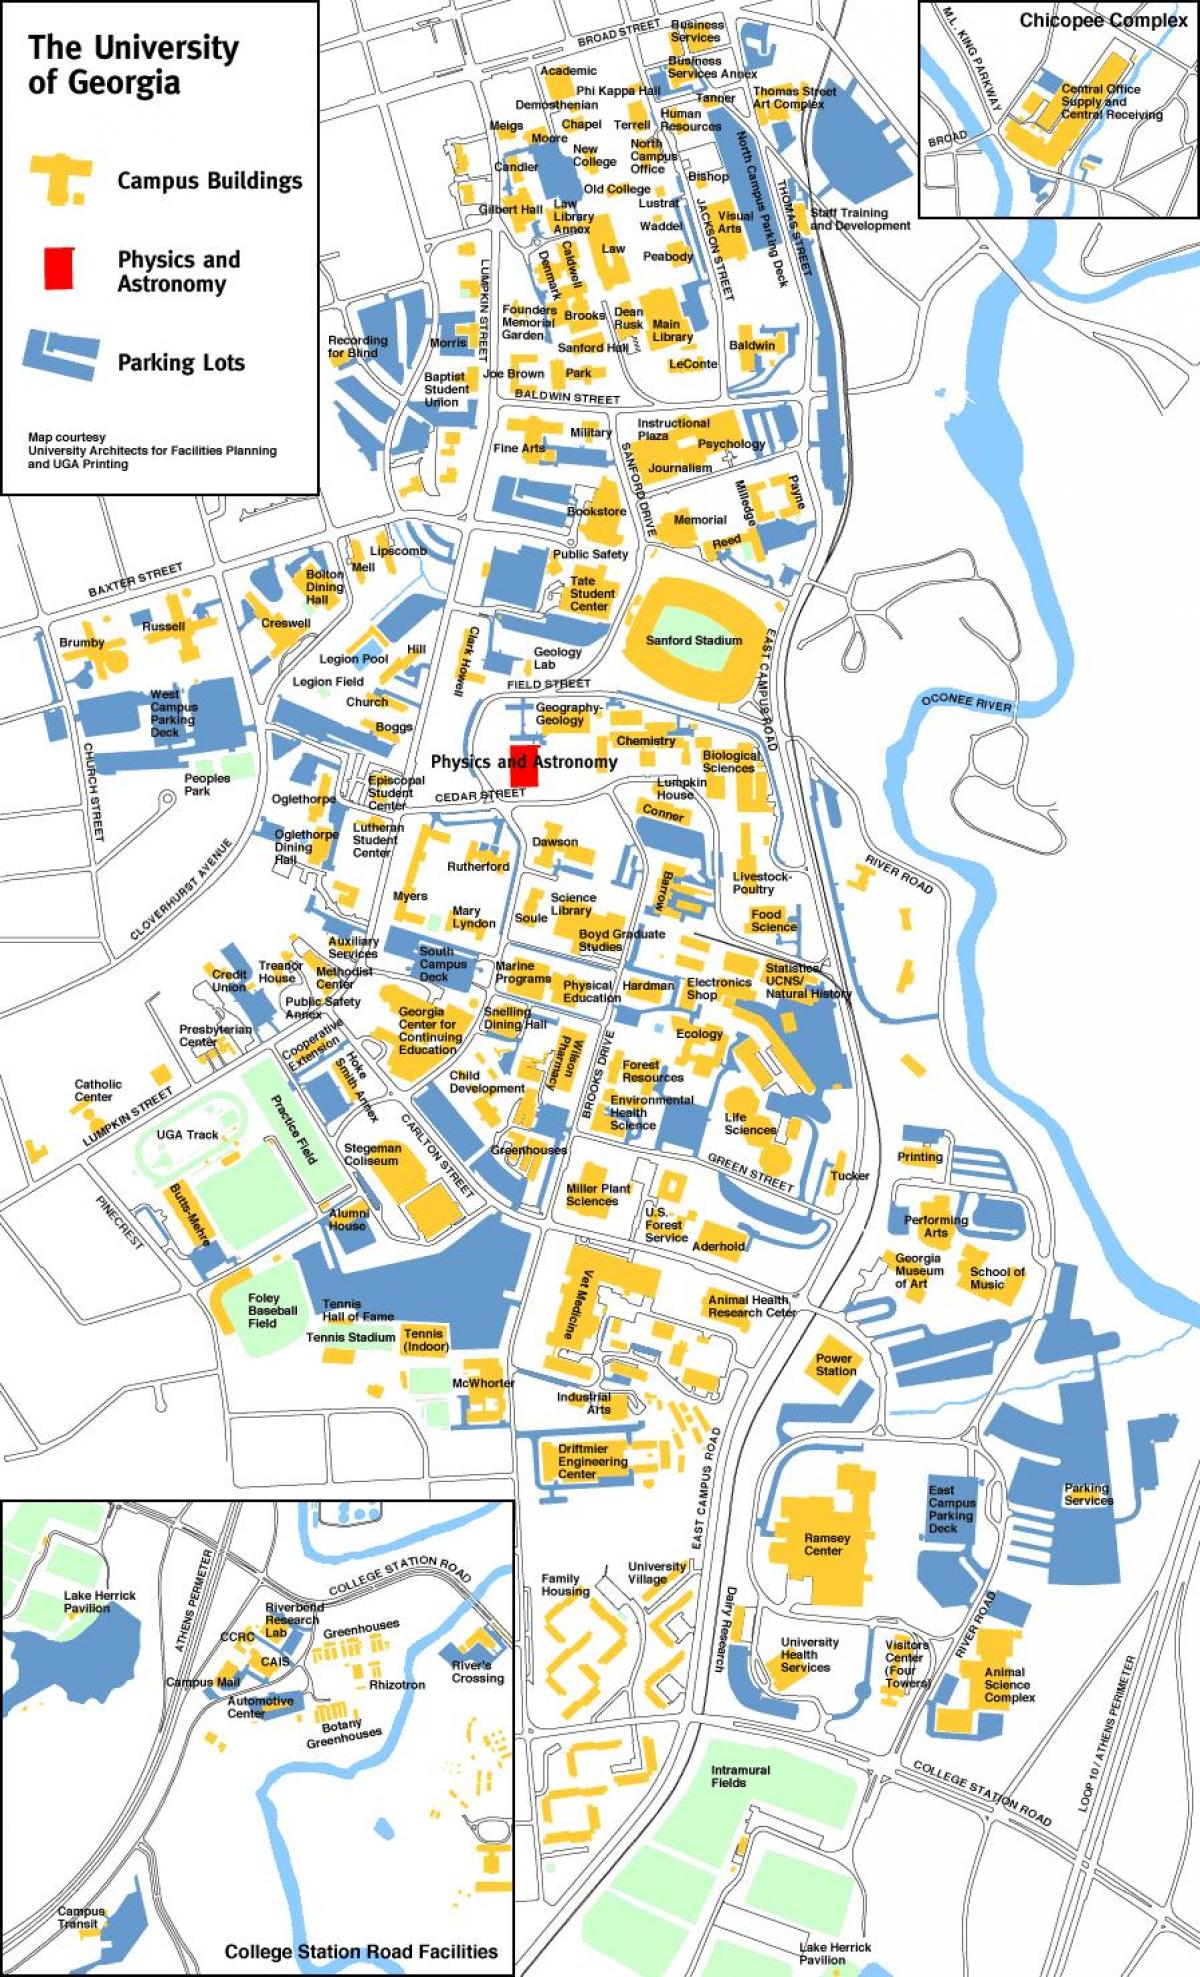 जॉर्जिया विश्वविद्यालय का नक्शा